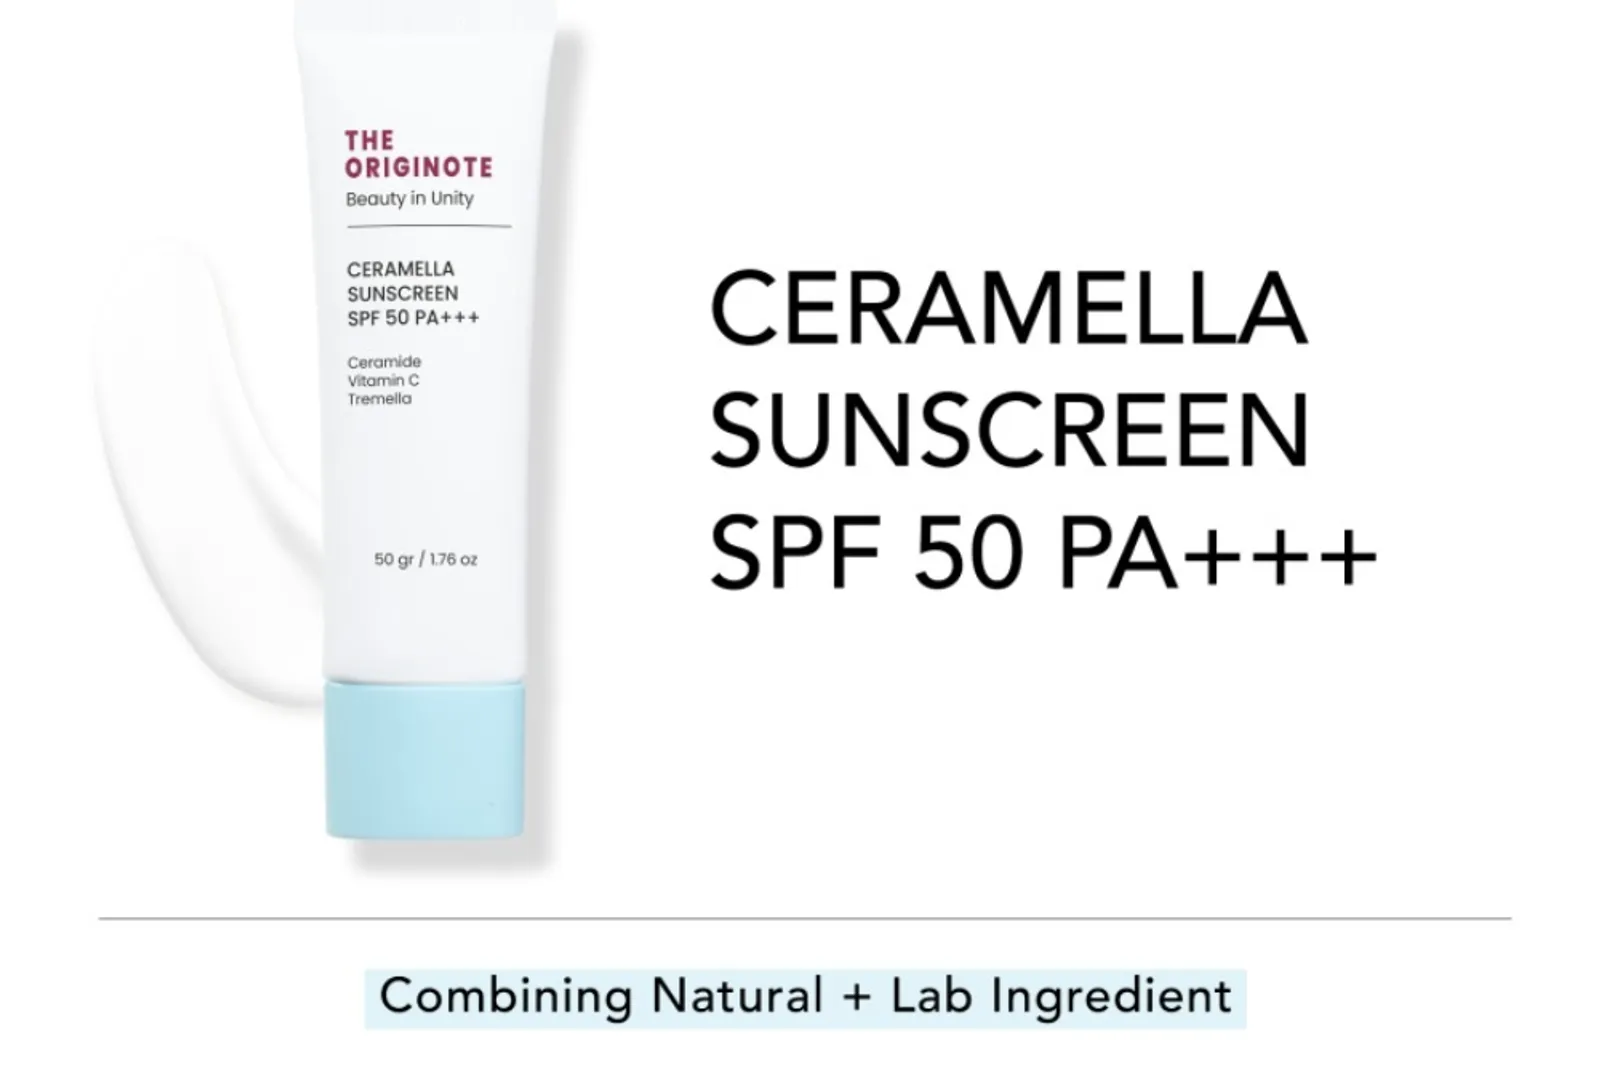 Sunscreen Originote: Manfaat, Cara Pakai, dan Harga